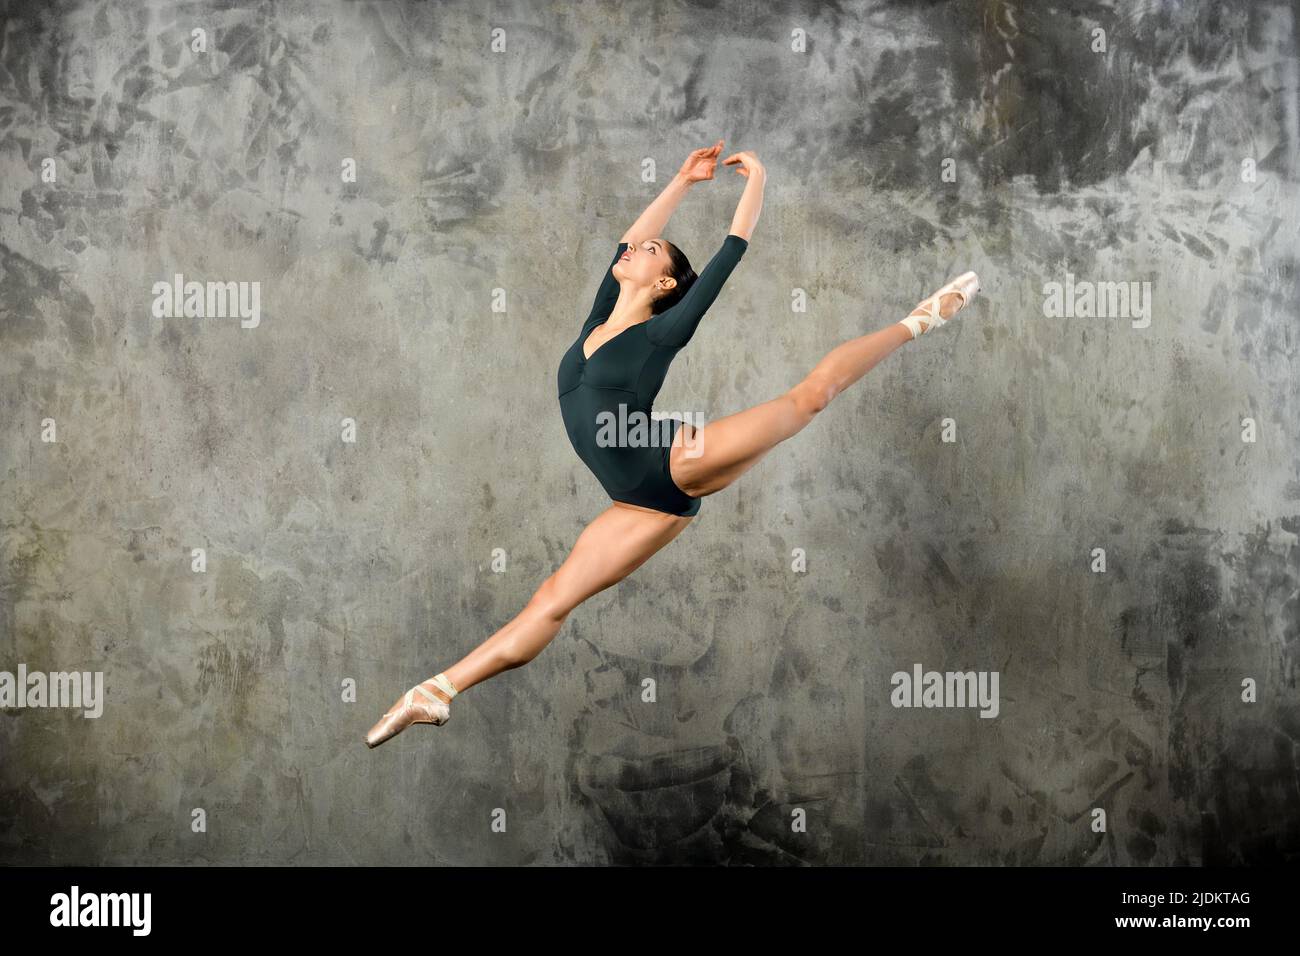 Giovane ballerina aggraziata in alto in aria in uno studio ritratto contro una parete grigia con copyspace Foto Stock